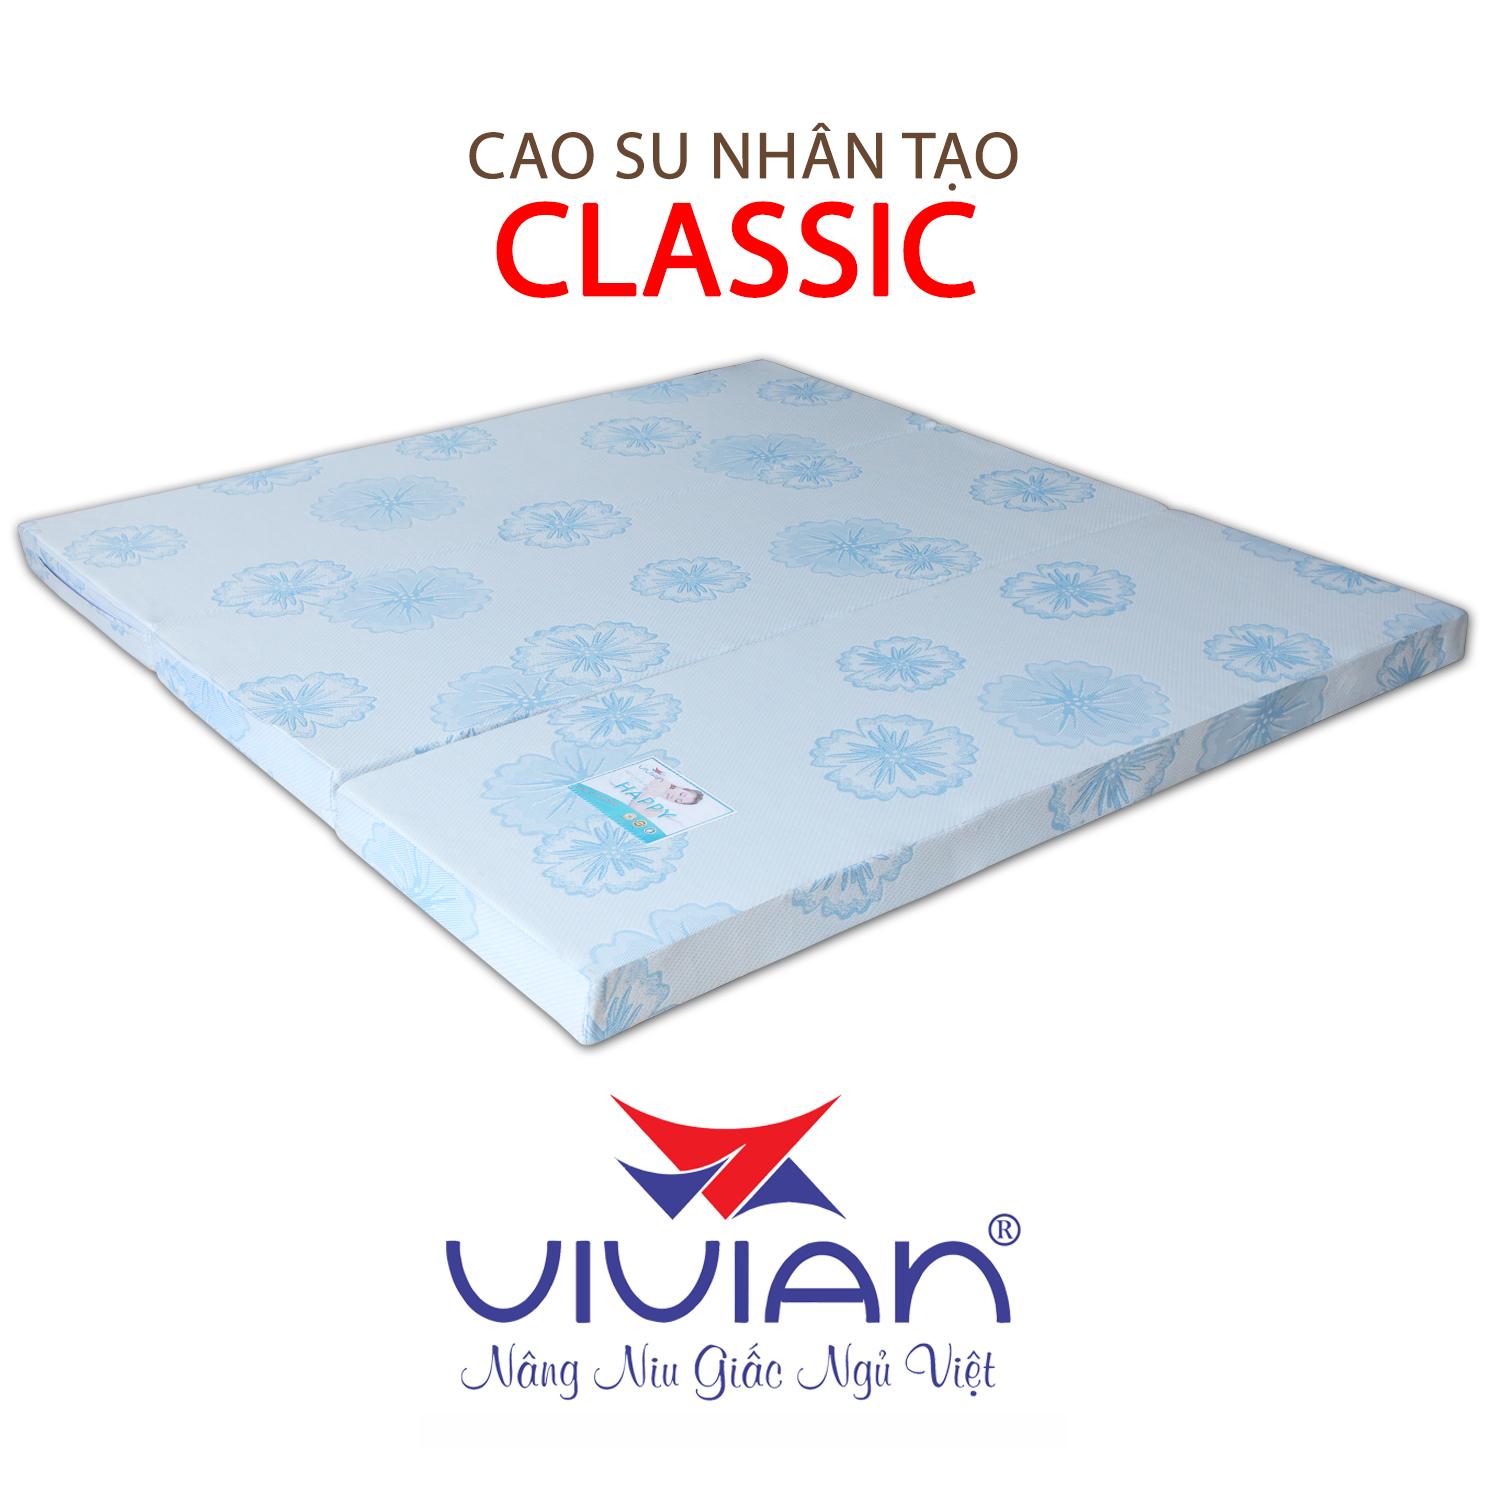 NỆM CAO SU NHÂN TẠO CLASSIC GẤP 3 VIVIAN 160X200X10